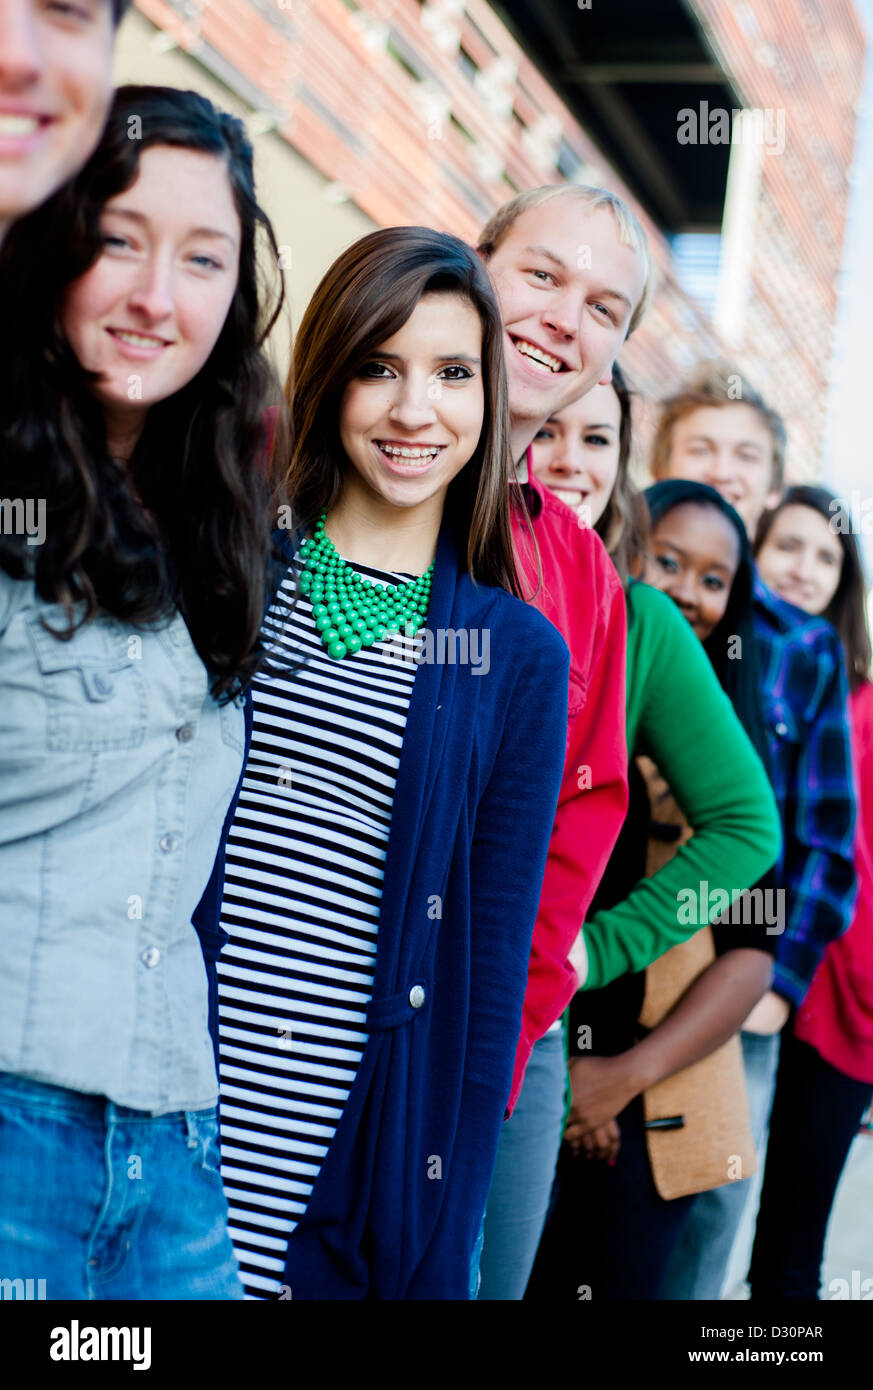 Groupe d'étudiants à l'extérieur Divers smiling in a line Banque D'Images